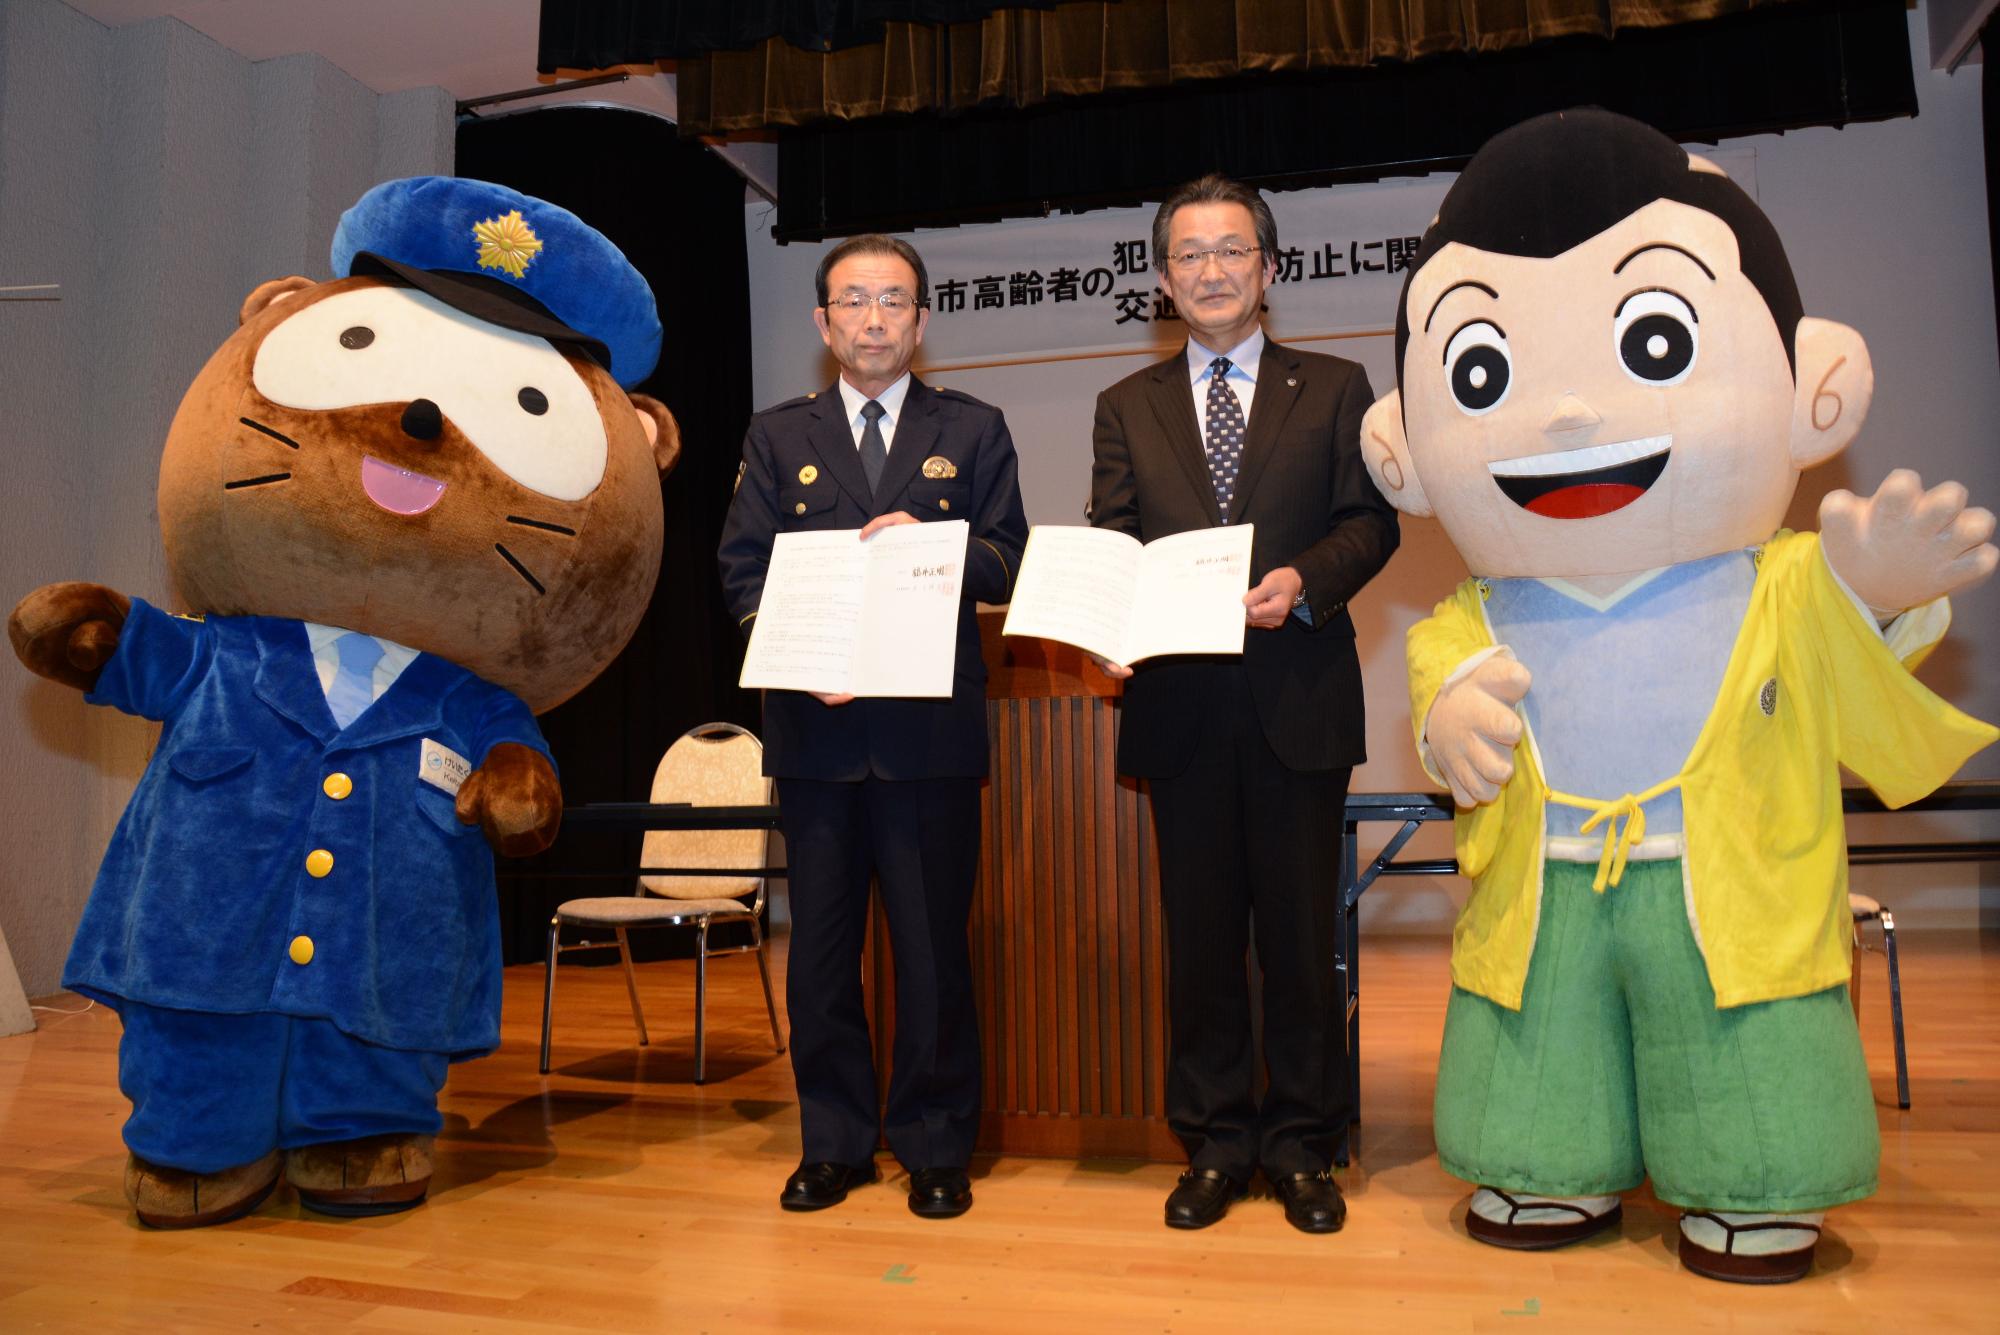 けいたくんとよえもん君の間に市長と高島警察署の代表者が立ち、協定書を持っている写真